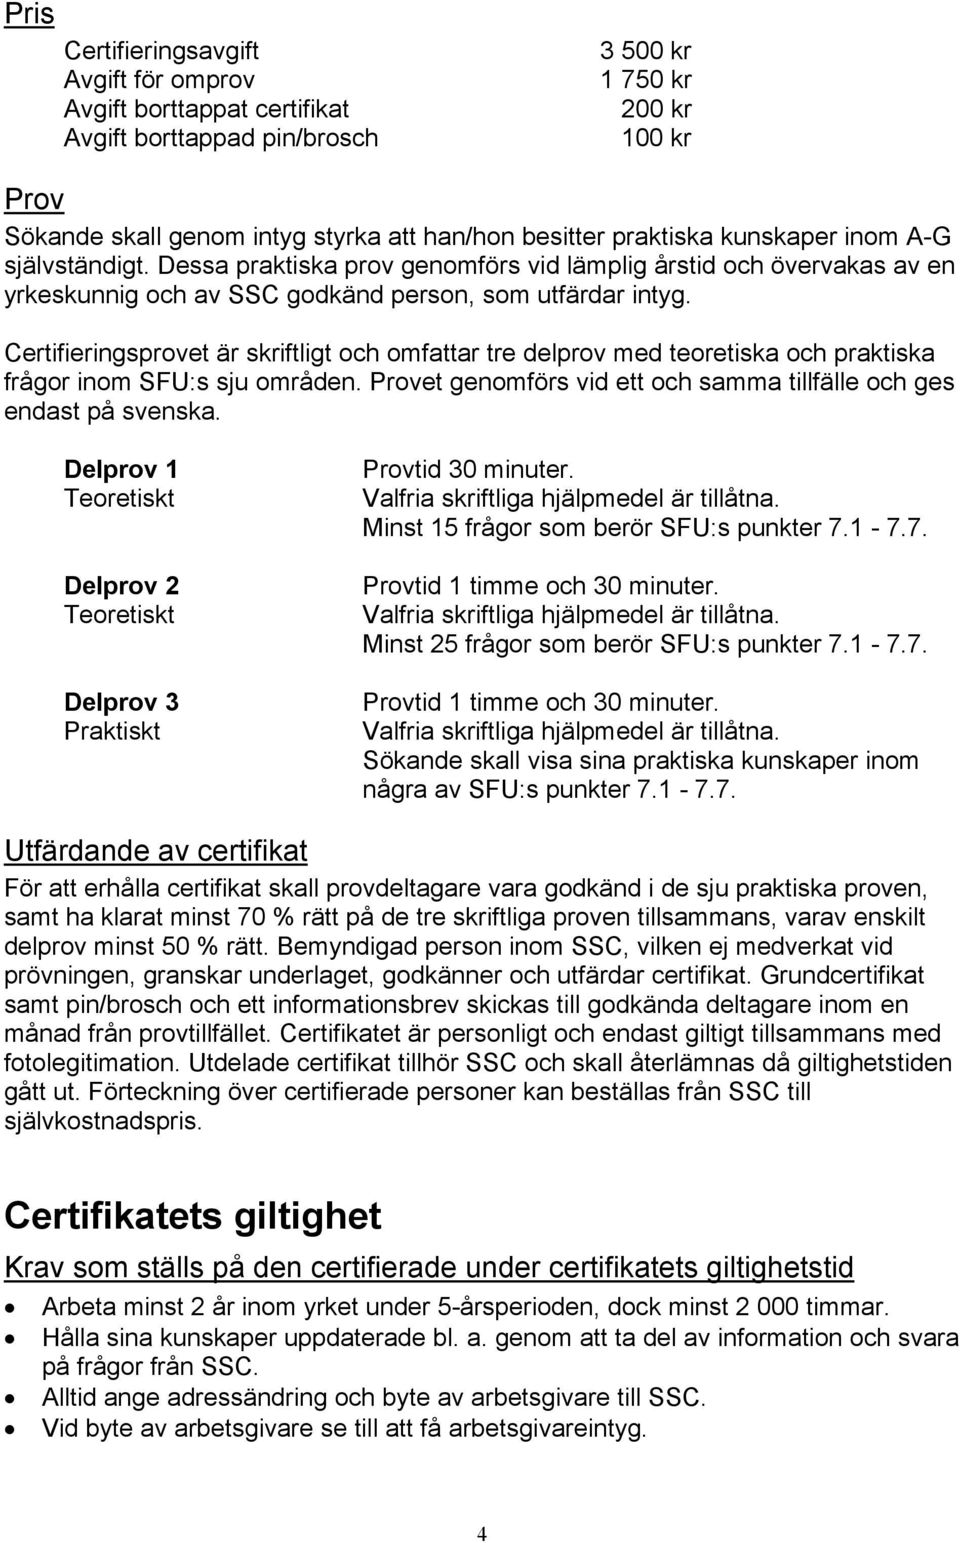 Certifieringsprovet är skriftligt och omfattar tre delprov med teoretiska och praktiska frågor inom SFU:s sju områden. Provet genomförs vid ett och samma tillfälle och ges endast på svenska.